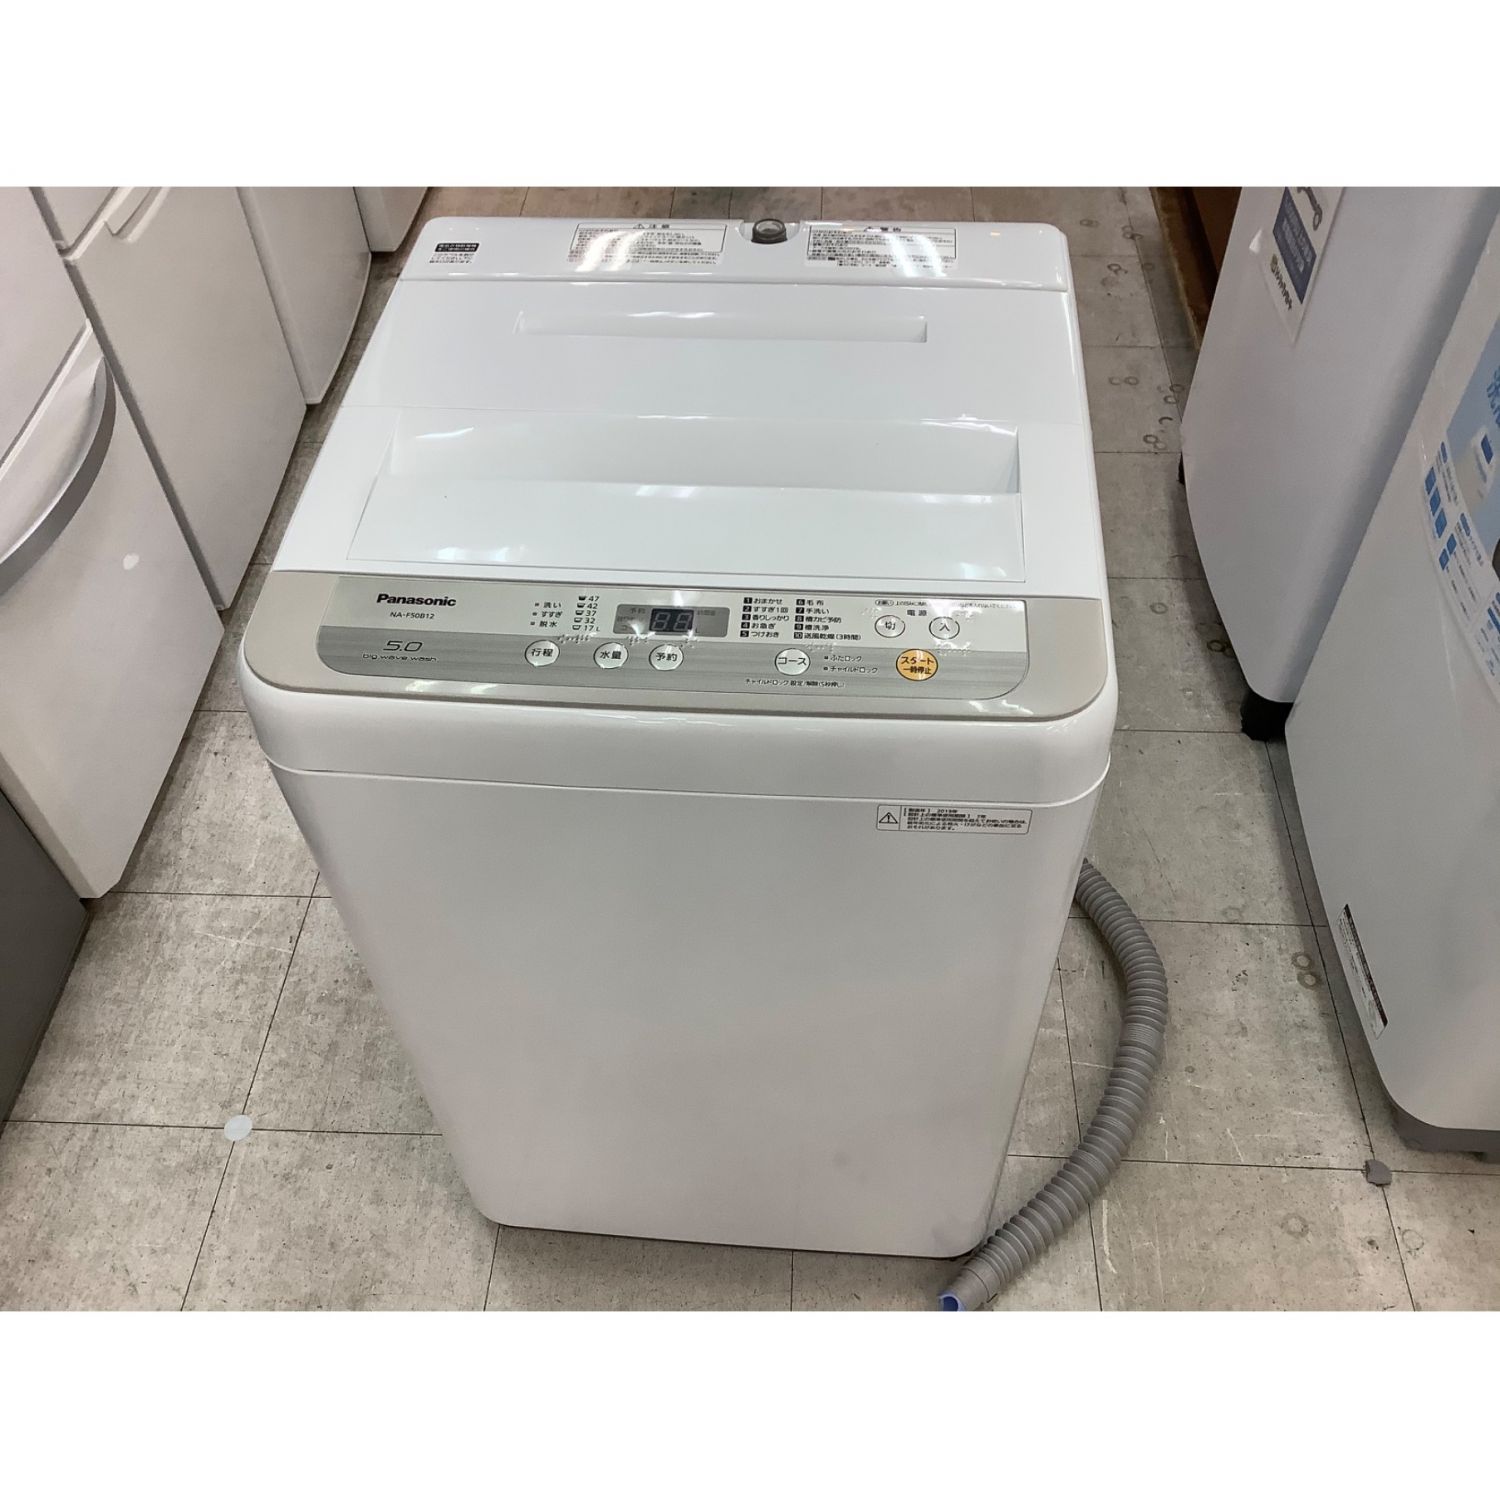 42％割引ホワイト系オリジナル Panasonic パナソニック 洗濯機 NA-F50B12 5kg 2019年 洗濯機  生活家電ホワイト系-BLOG.ABRAMGE.COM.BR